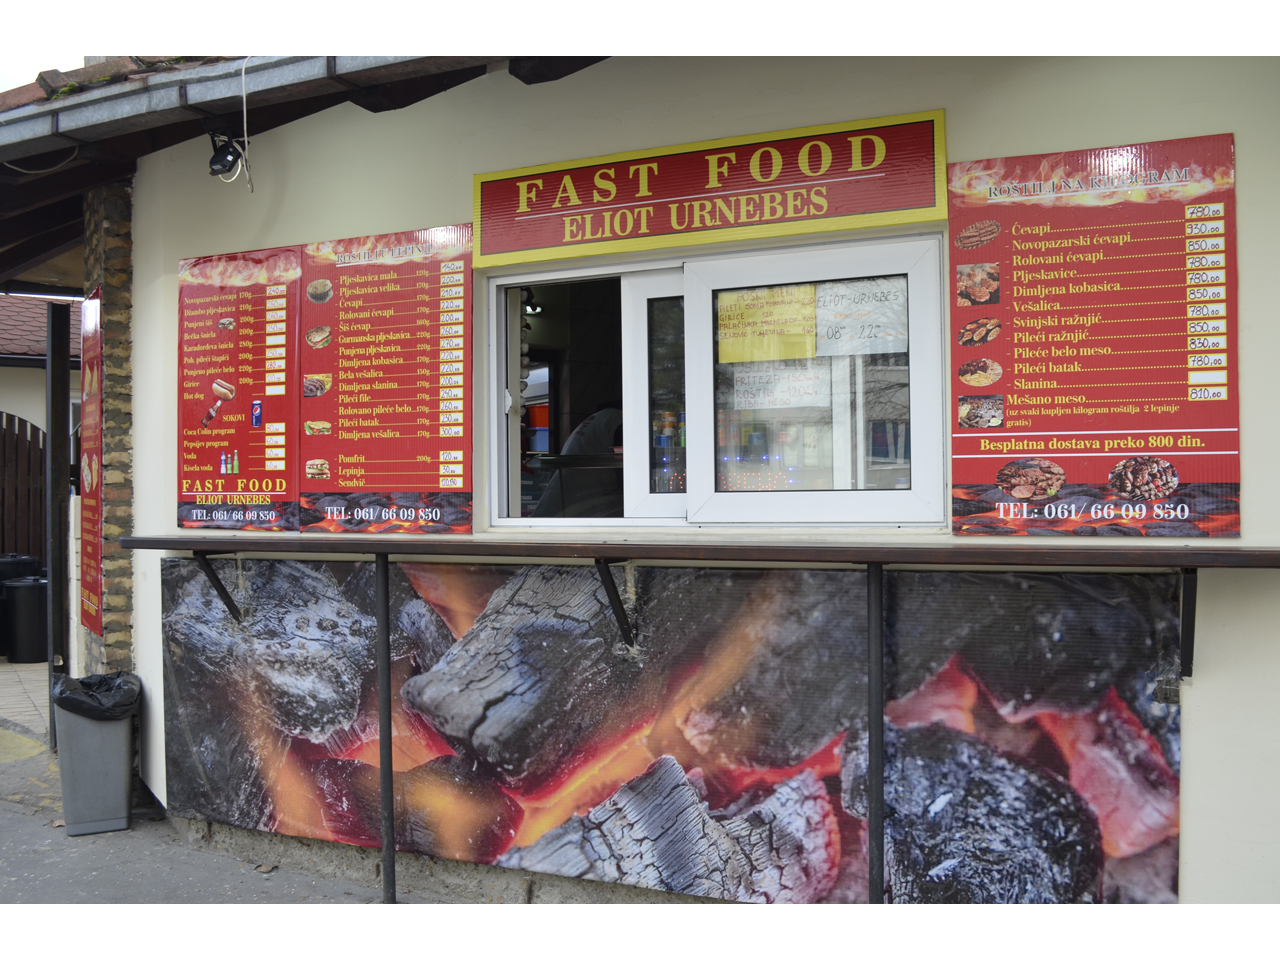 FAST FOOD ELIOT URNEBES Fast food Belgrade - Photo 3